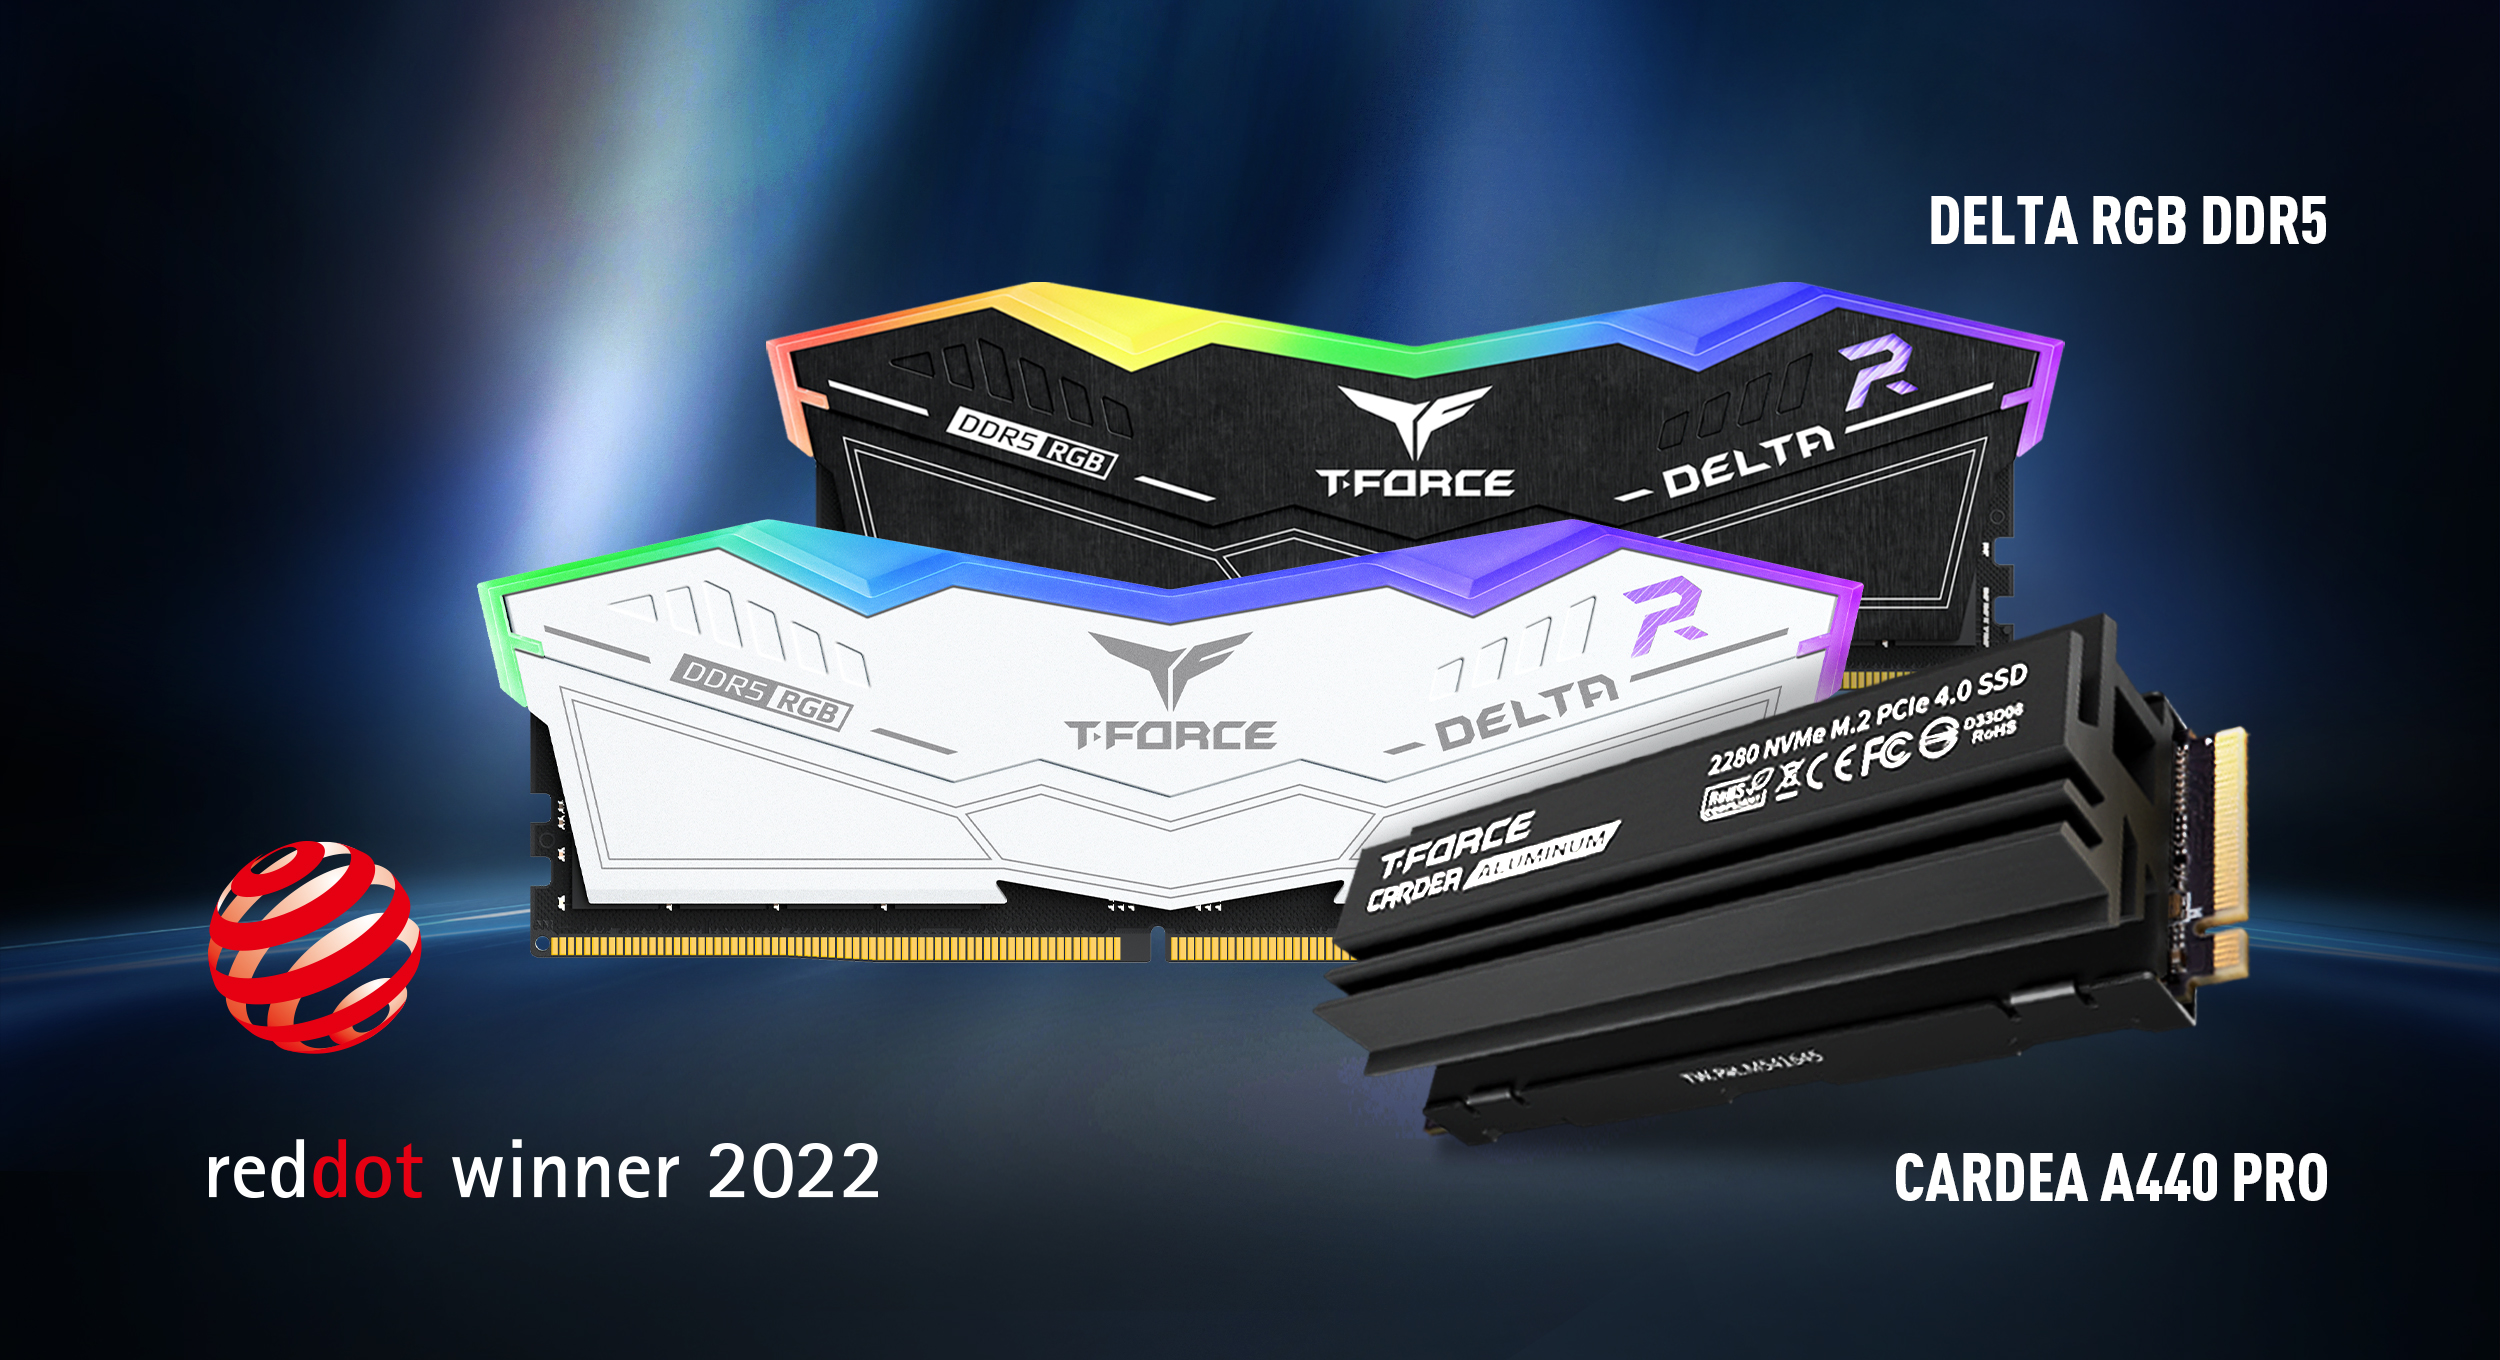 十銓科技T-FORCE DELTA RGB DDR5及CARDEA A440 PRO M.2 PCIe SSD雙雙榮獲2022德國紅點設計大獎